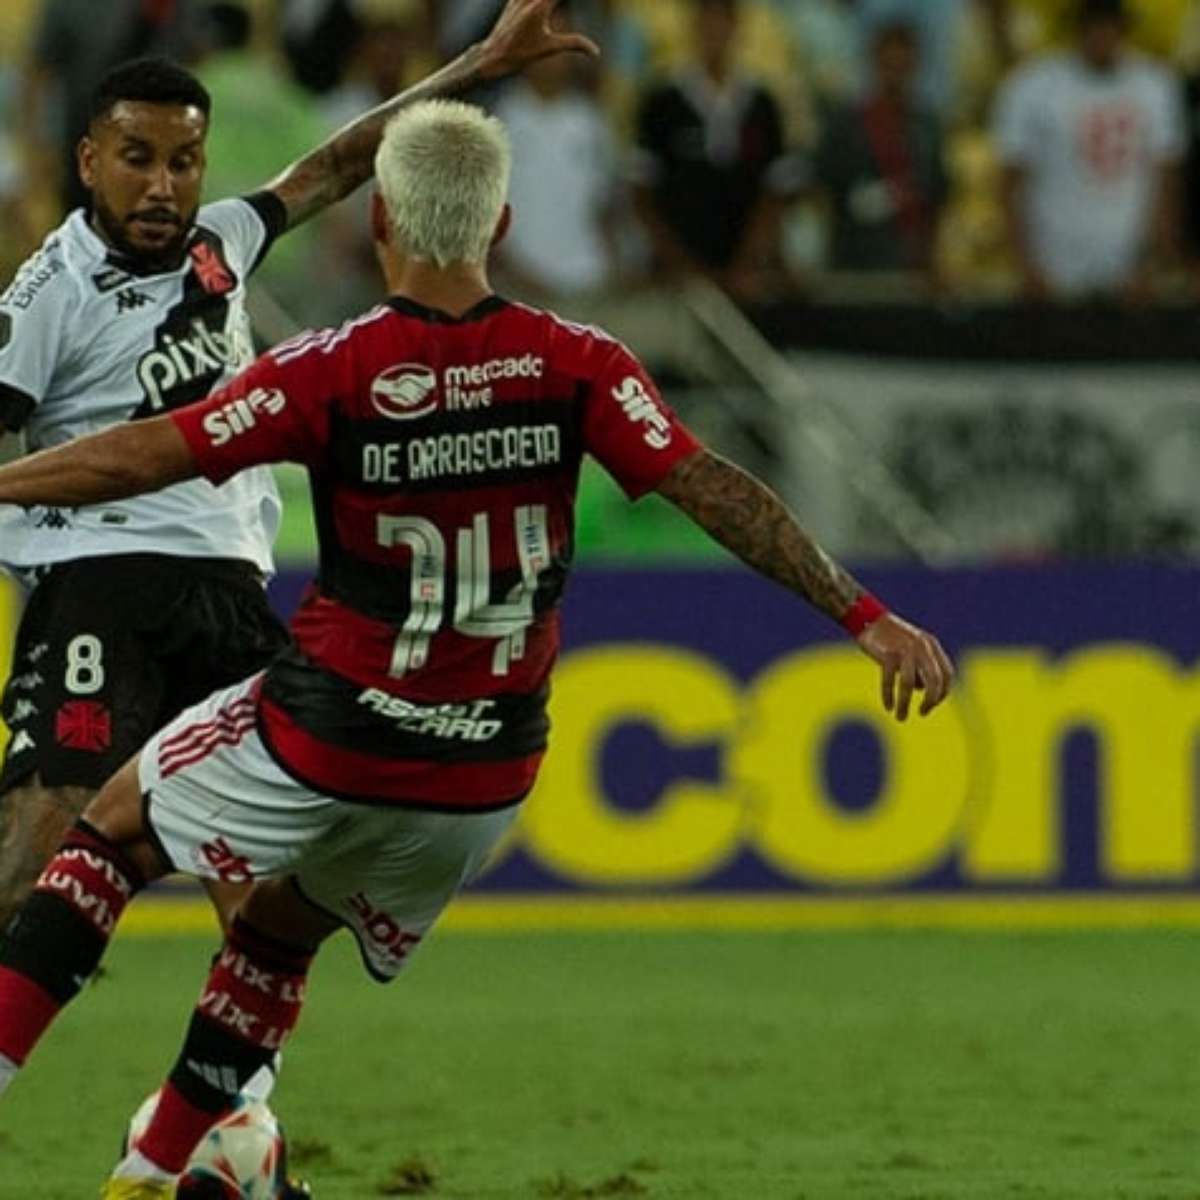 Flamengo e Grêmio é classificado como jogo de alto risco pelas autoridades